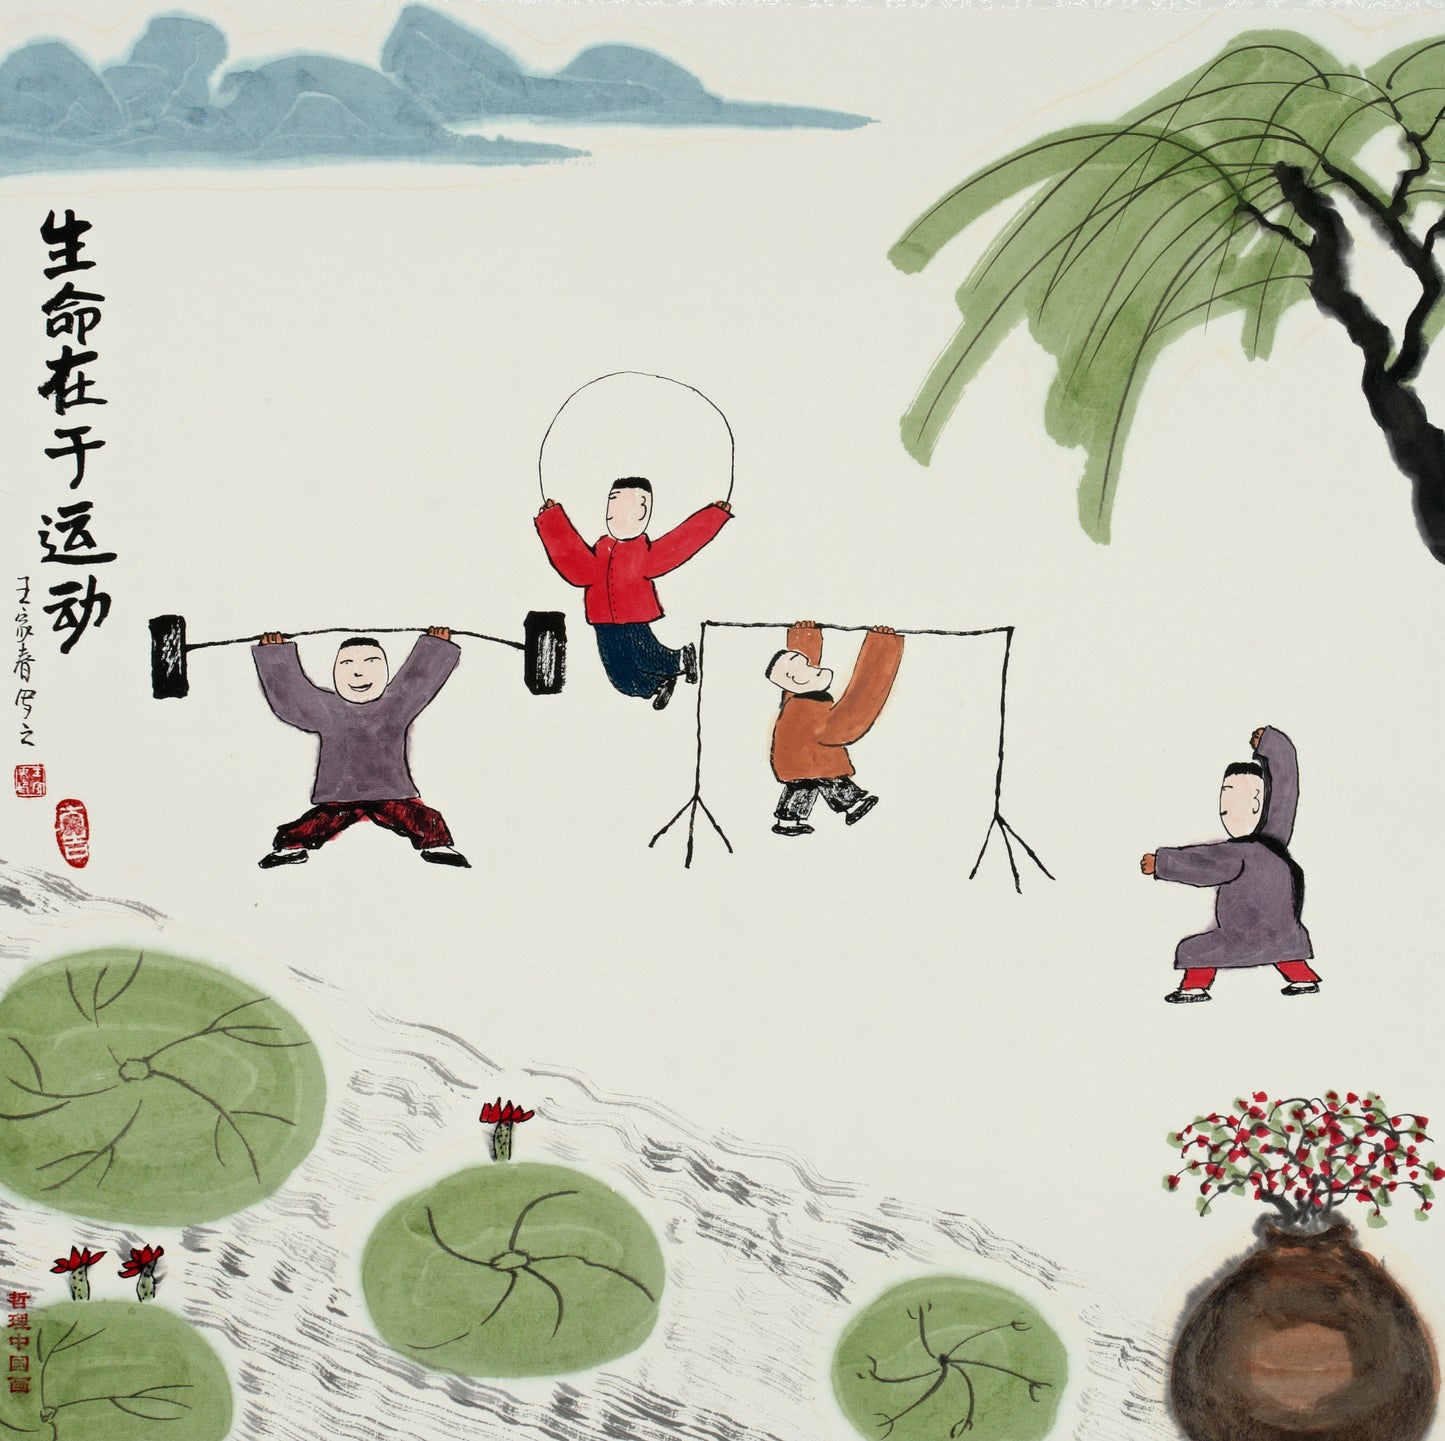 【数藏元】王家春哲理中国画数字藏品励志篇《生命在于运动》全球限量100份 展品勿拍